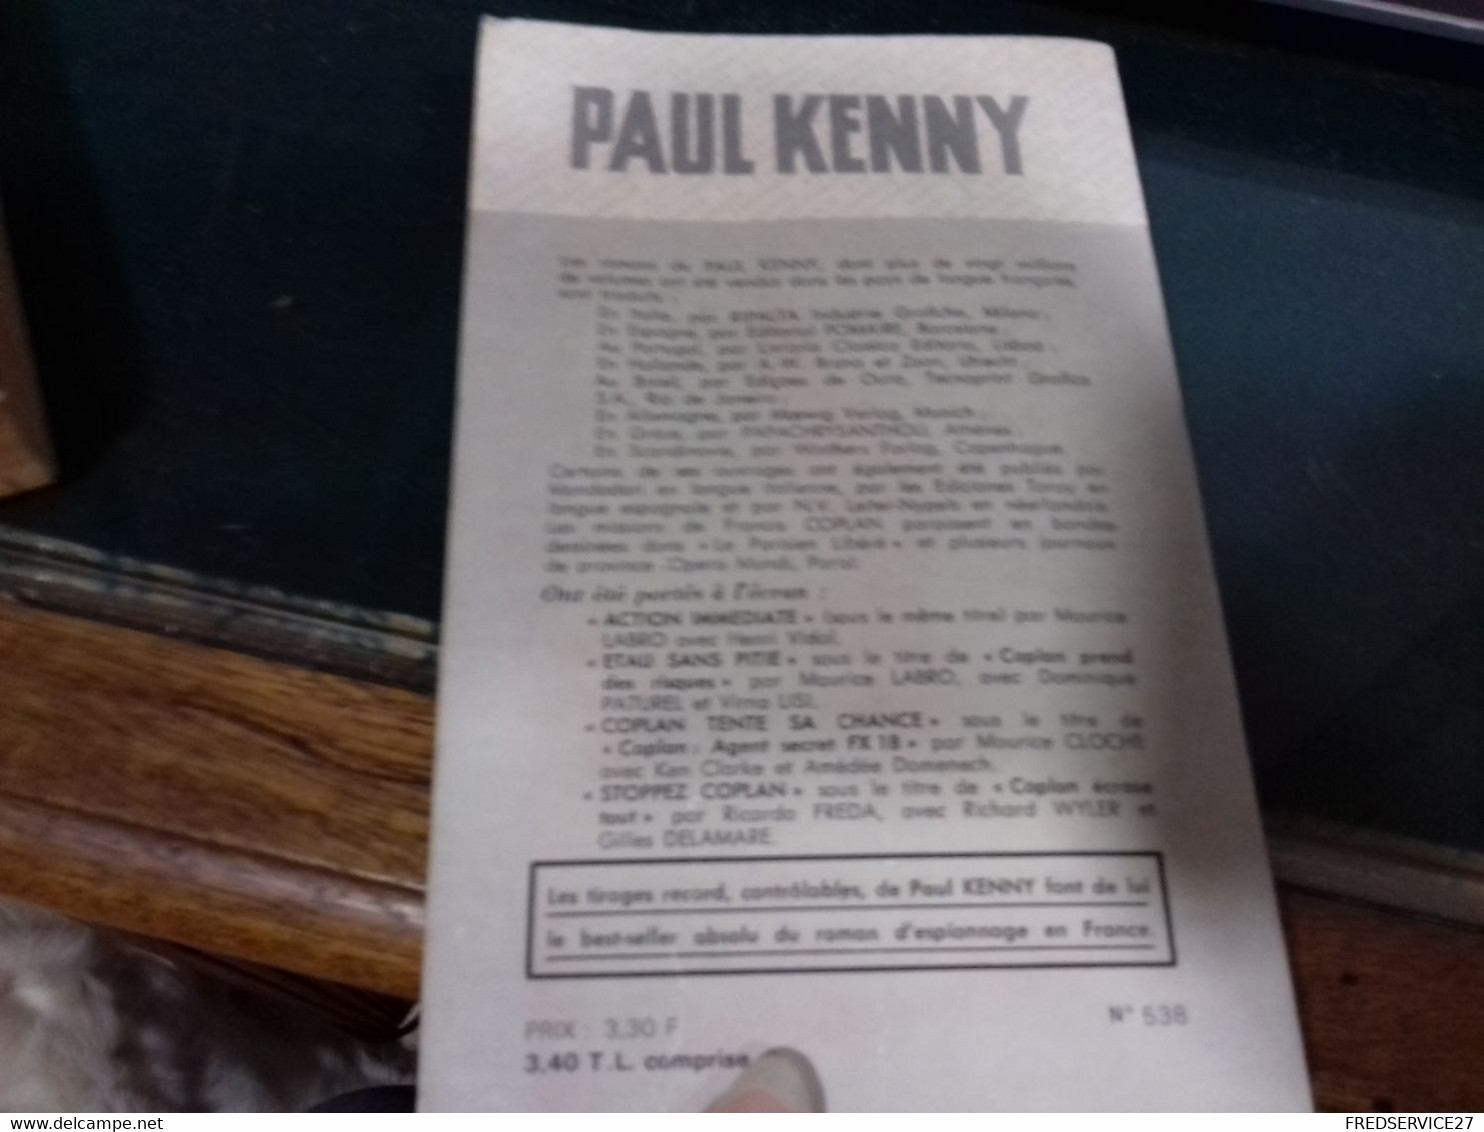 43 ///  COPLAN COUPE LES PONTS   PAUL KENNY - Zonder Classificatie